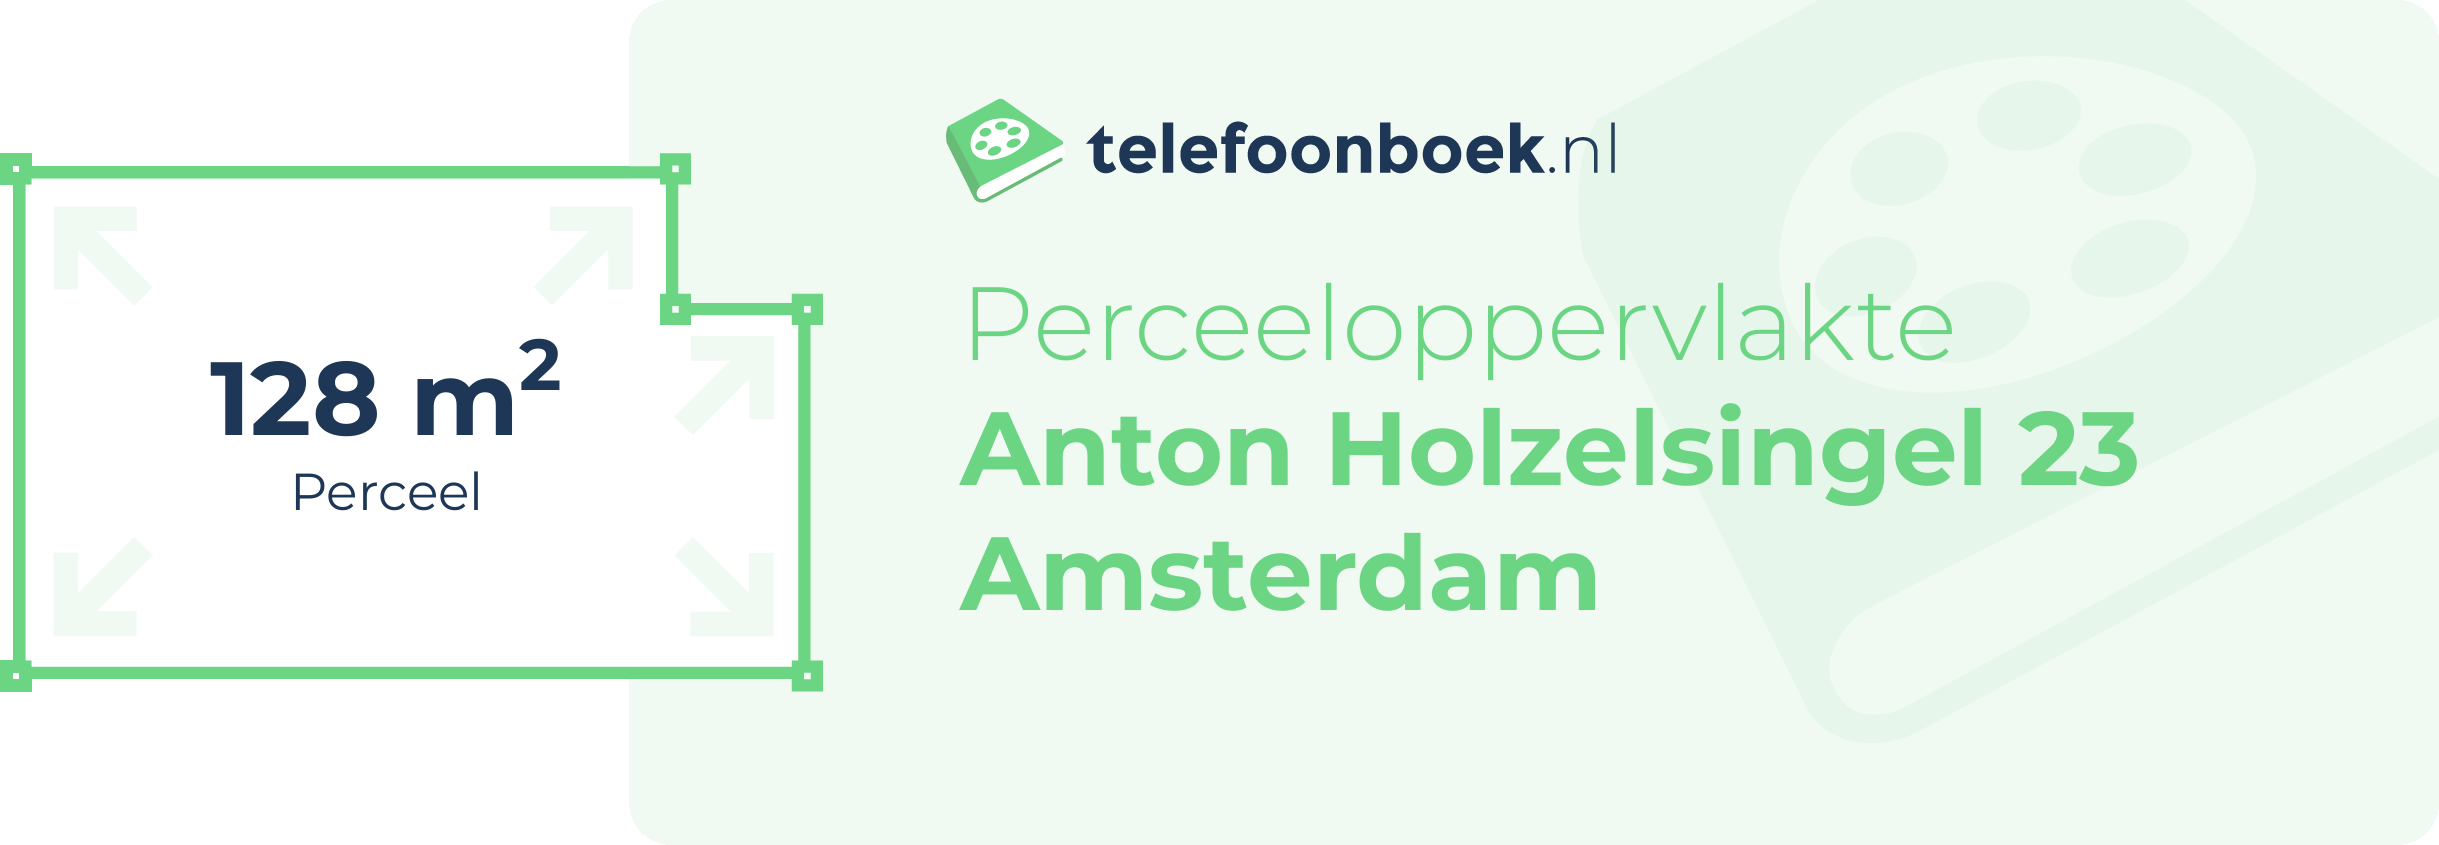 Perceeloppervlakte Anton Holzelsingel 23 Amsterdam